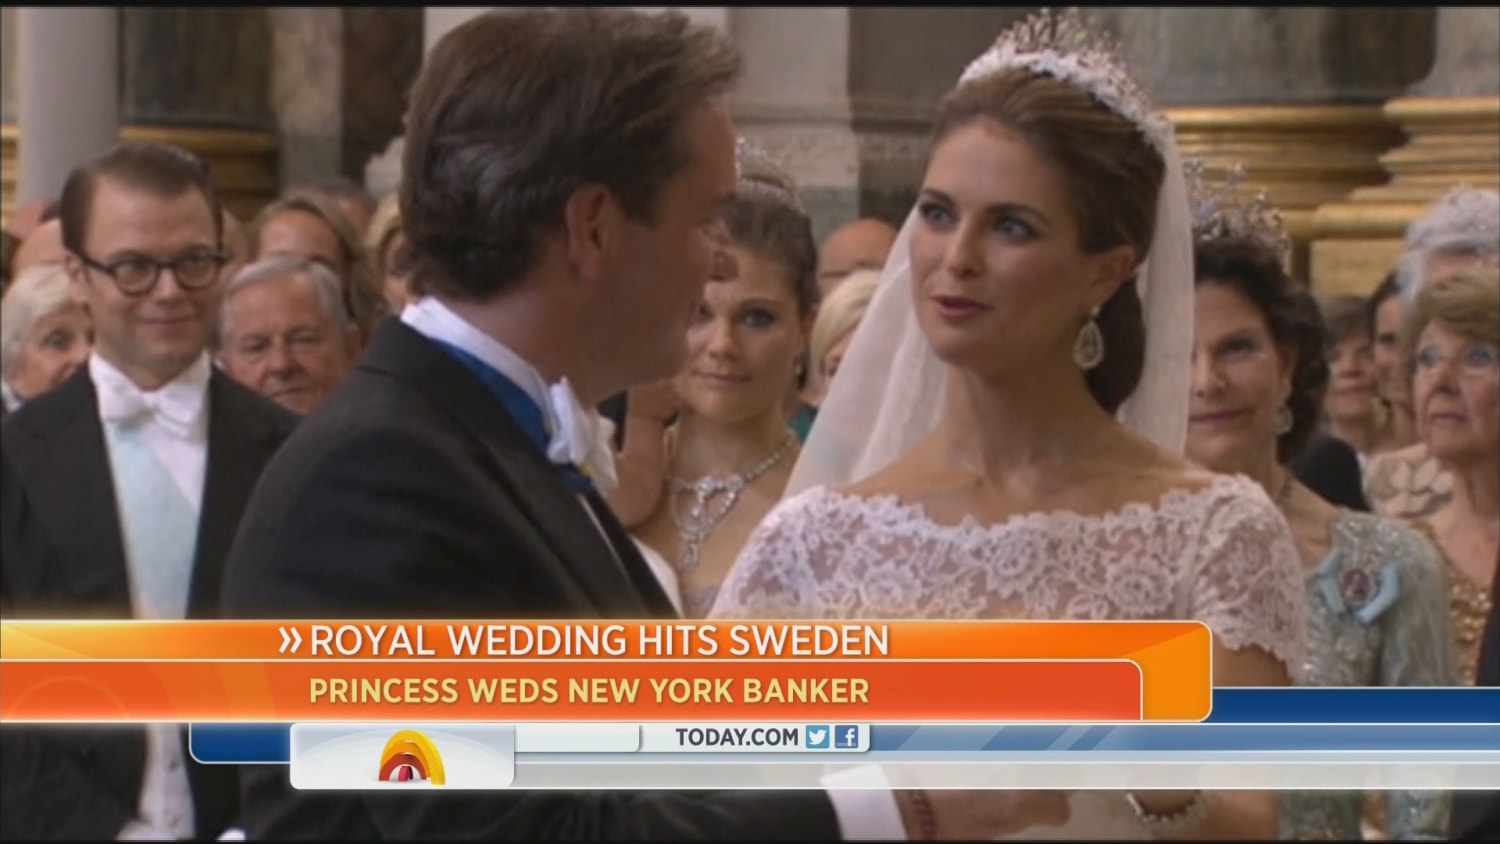 Sweden's wild child Princess Madeleine marries New York banker